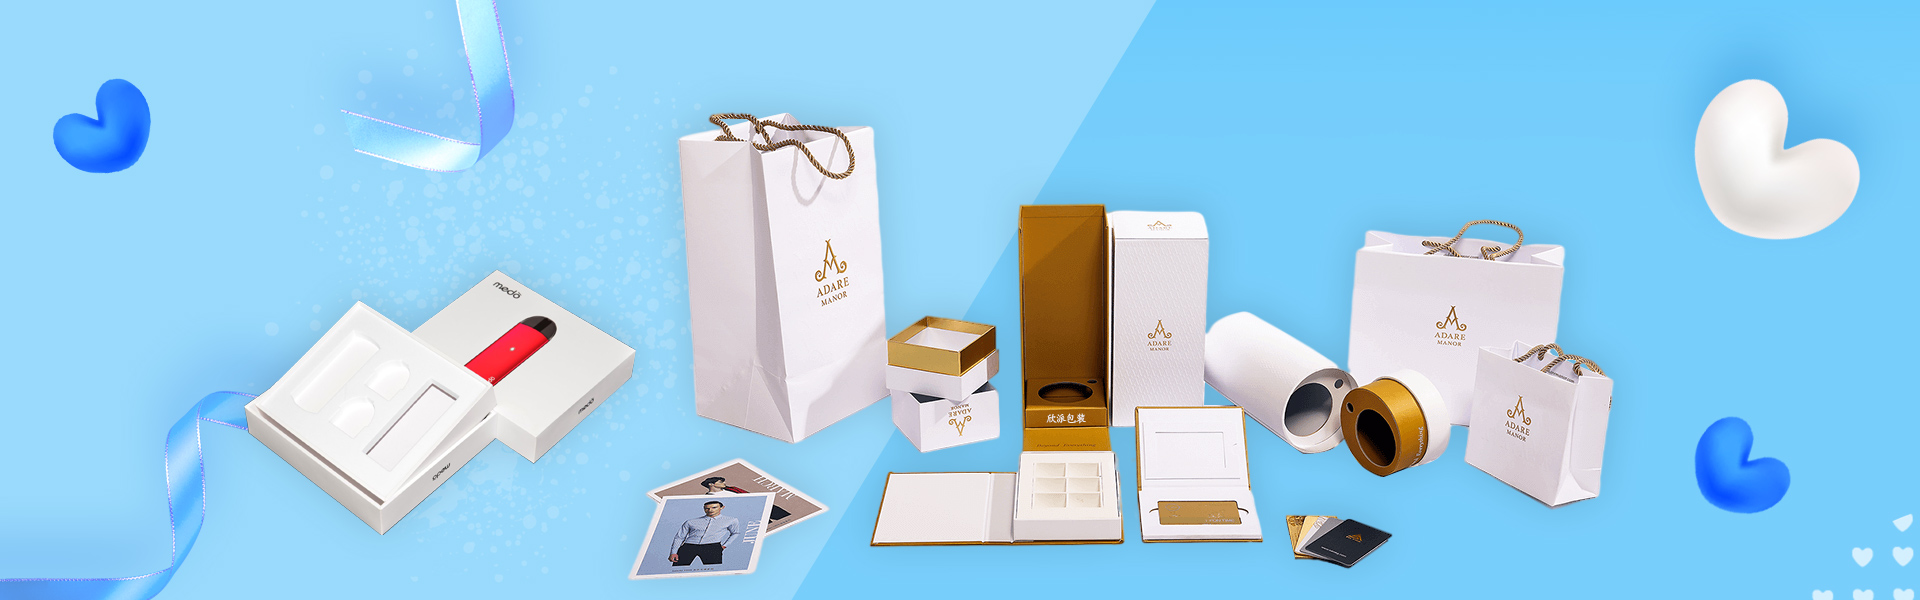 Caixa de presente, caixa de presente, caixa de beleza,Beifan Packaging Co., Ltd.